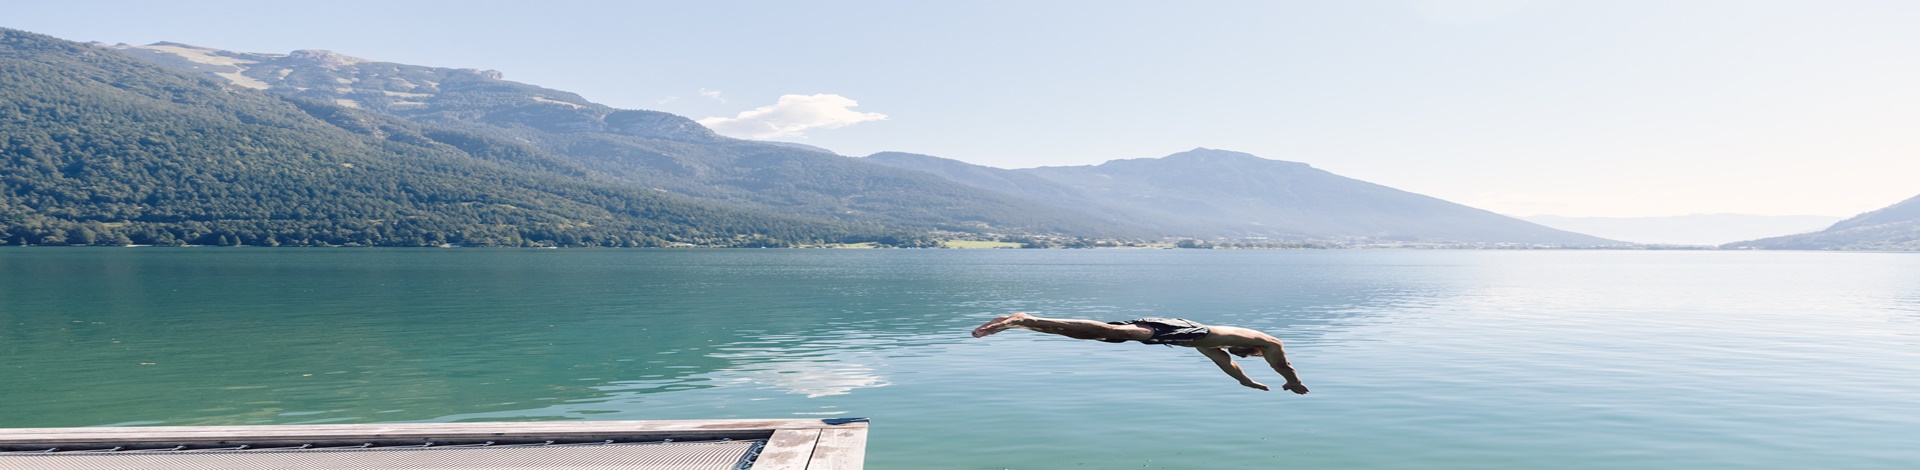 Urlaub am Wasser: Die schönsten Hotels am See